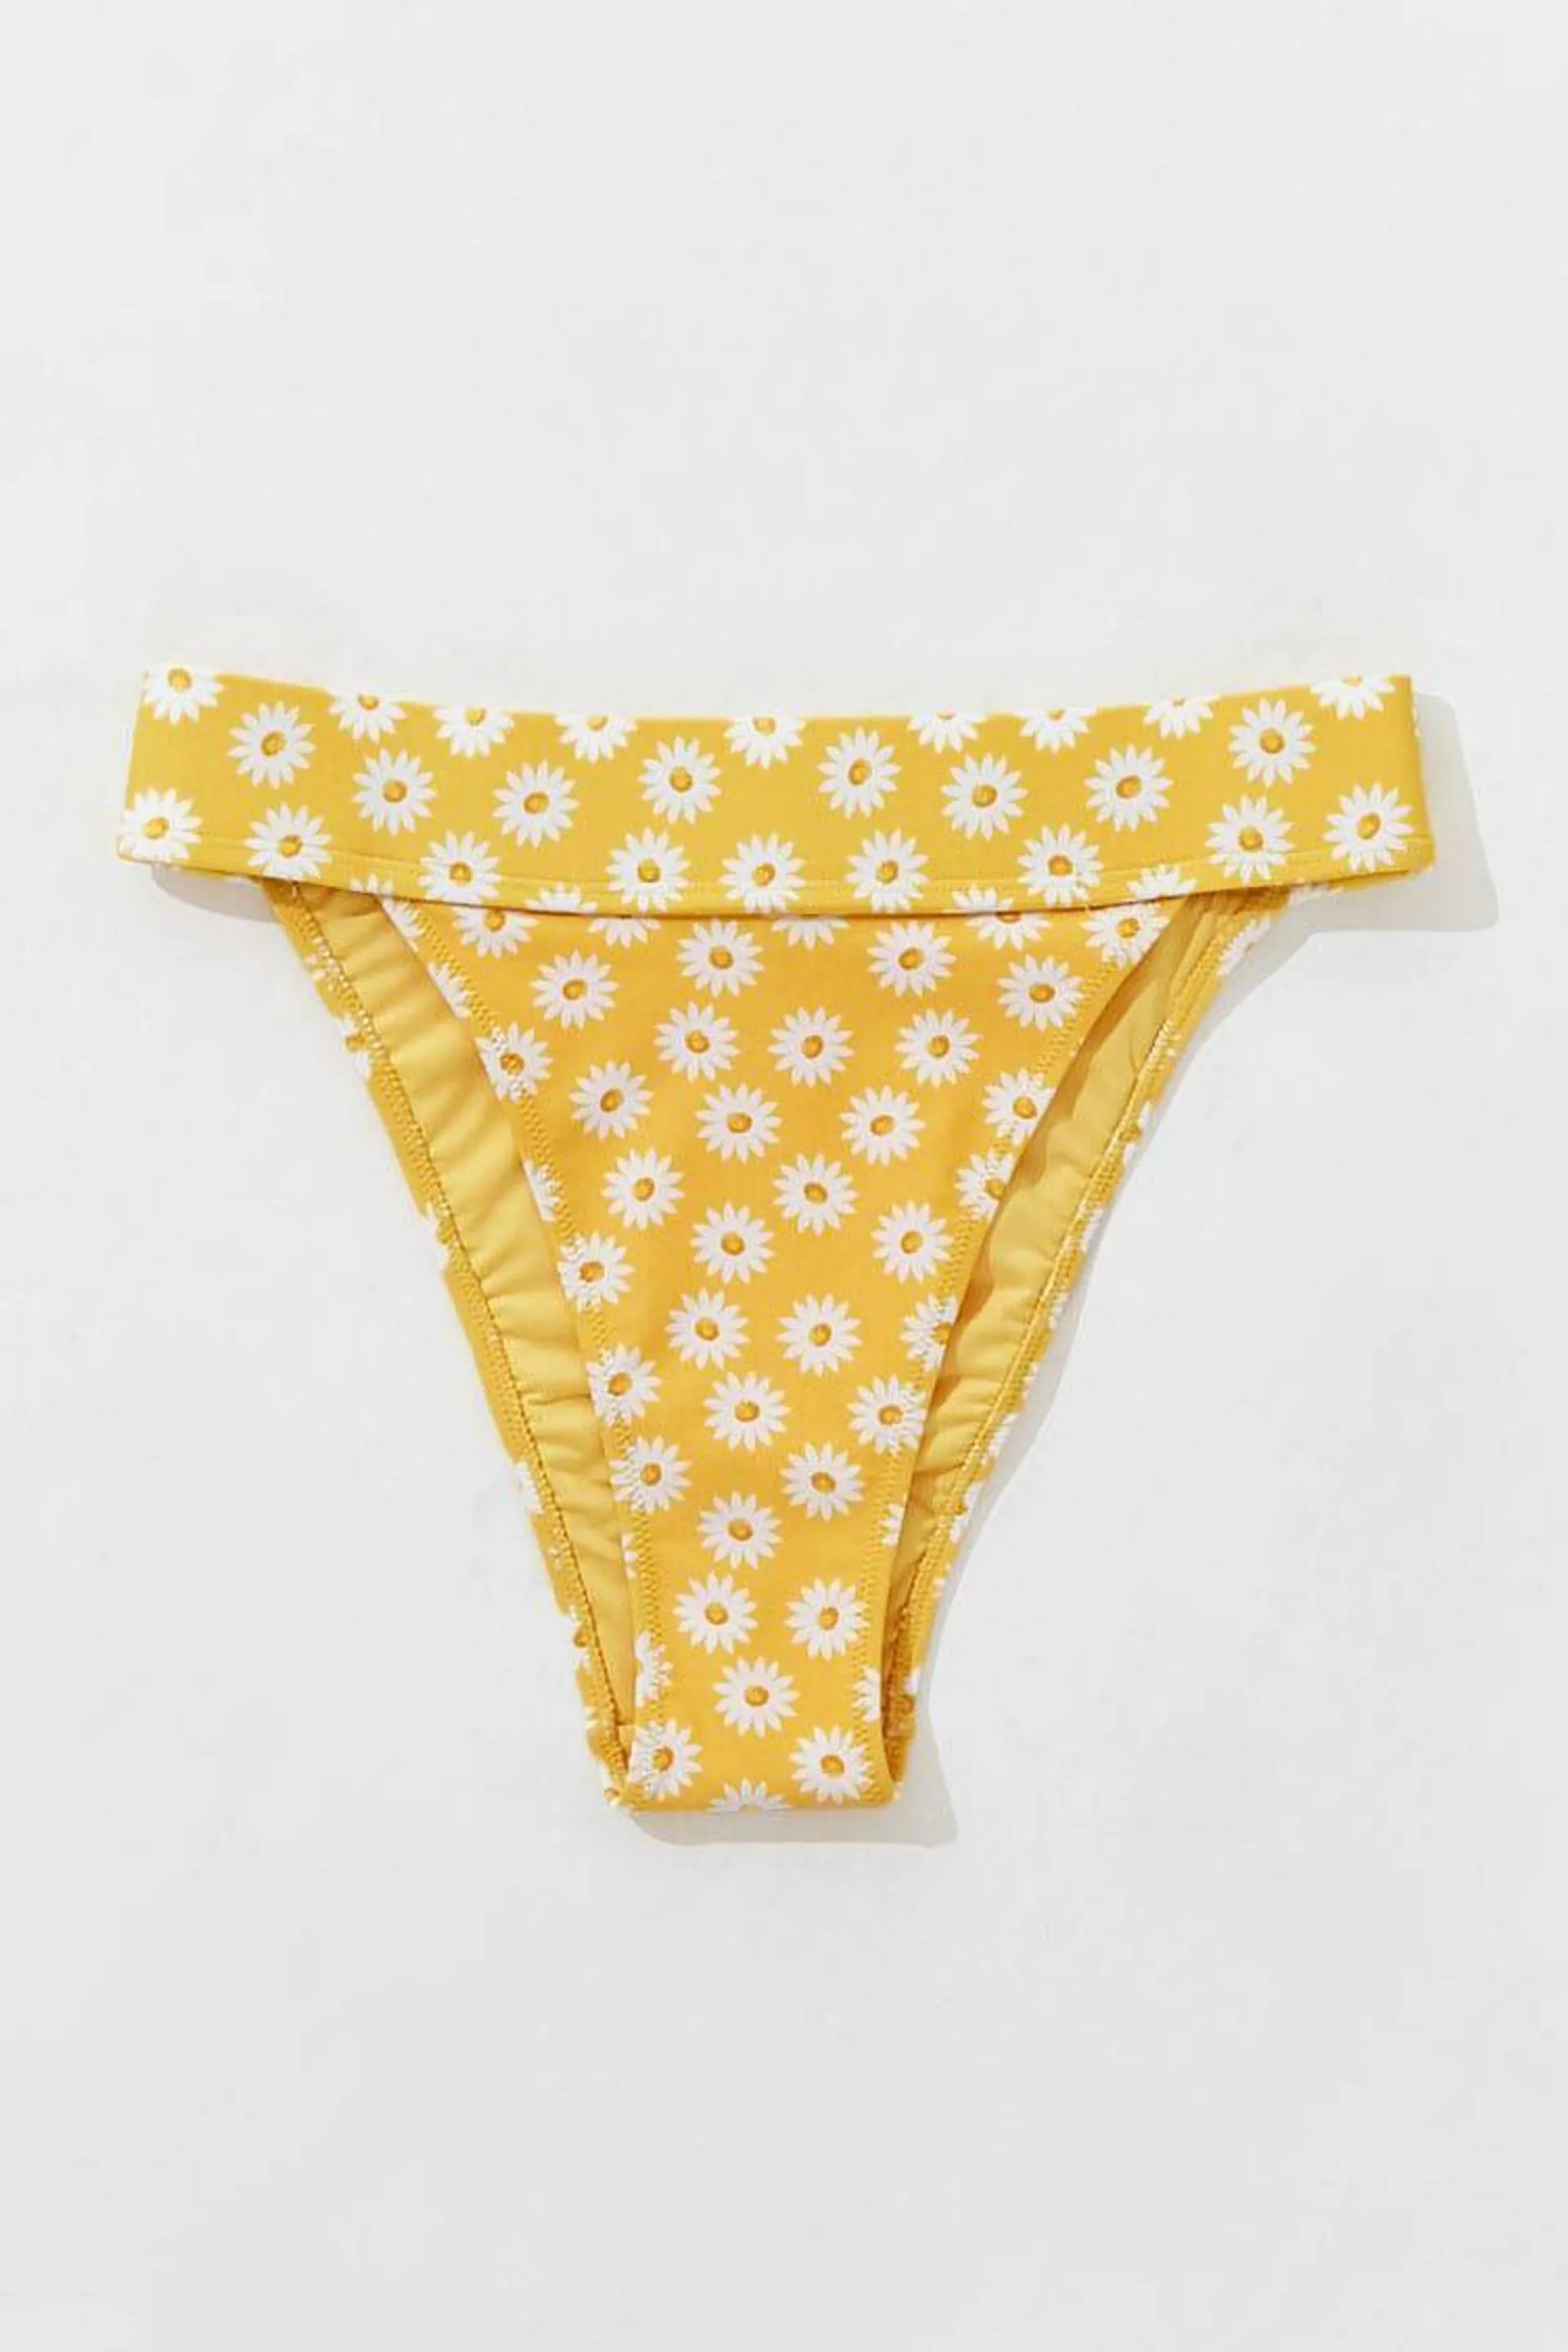 Floral High-Leg Bikini Bottoms Yellow White